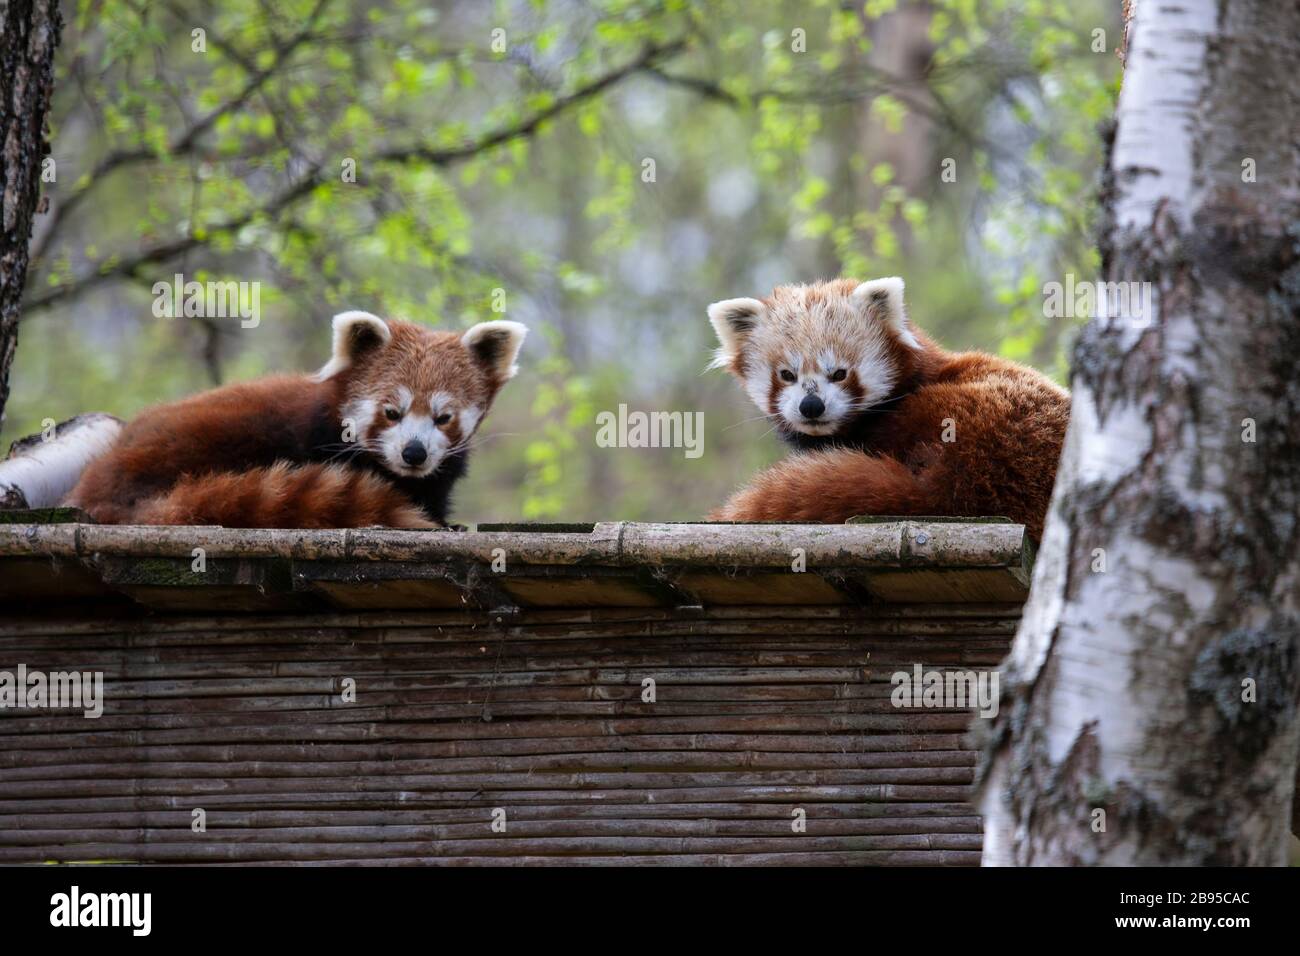 Une paire de Pandas rouges captives Ailurus fulgens posée sur une corniche en bois dans un parc faunique écossais Banque D'Images